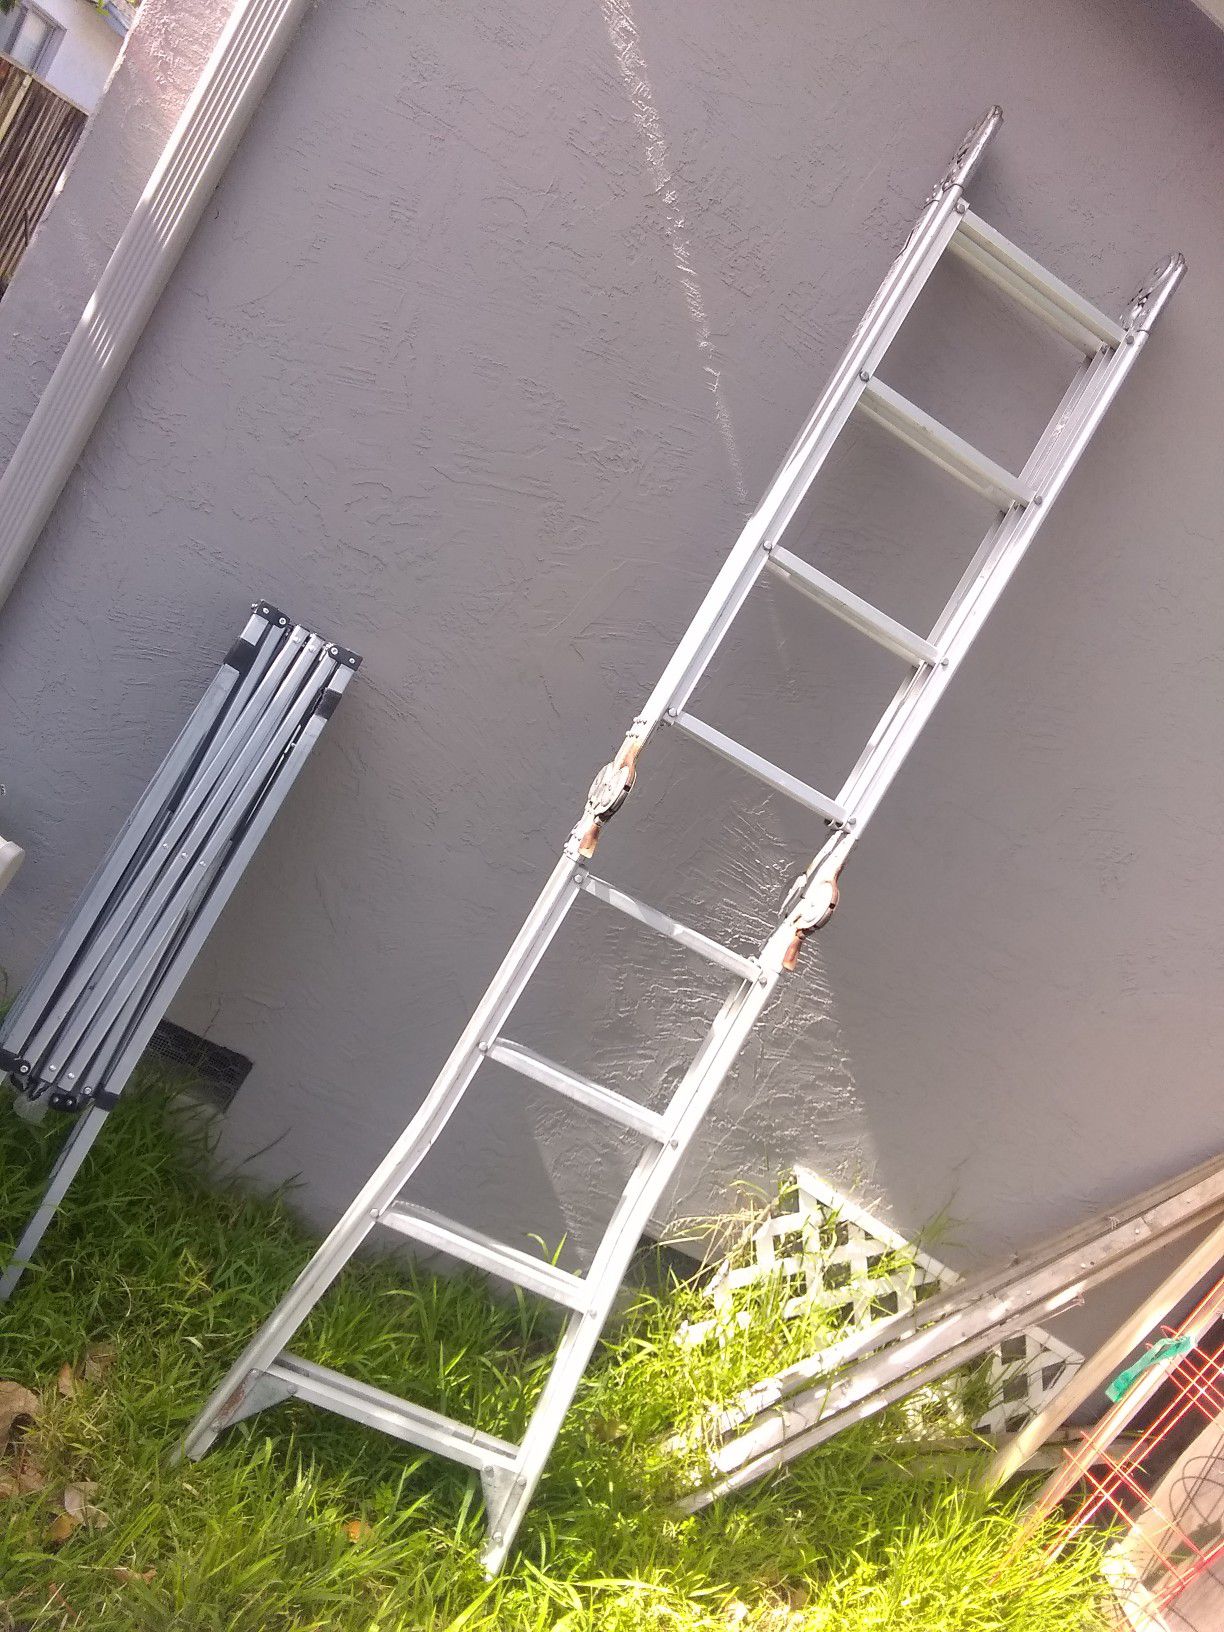 20 ft. Little Giant type ladder.